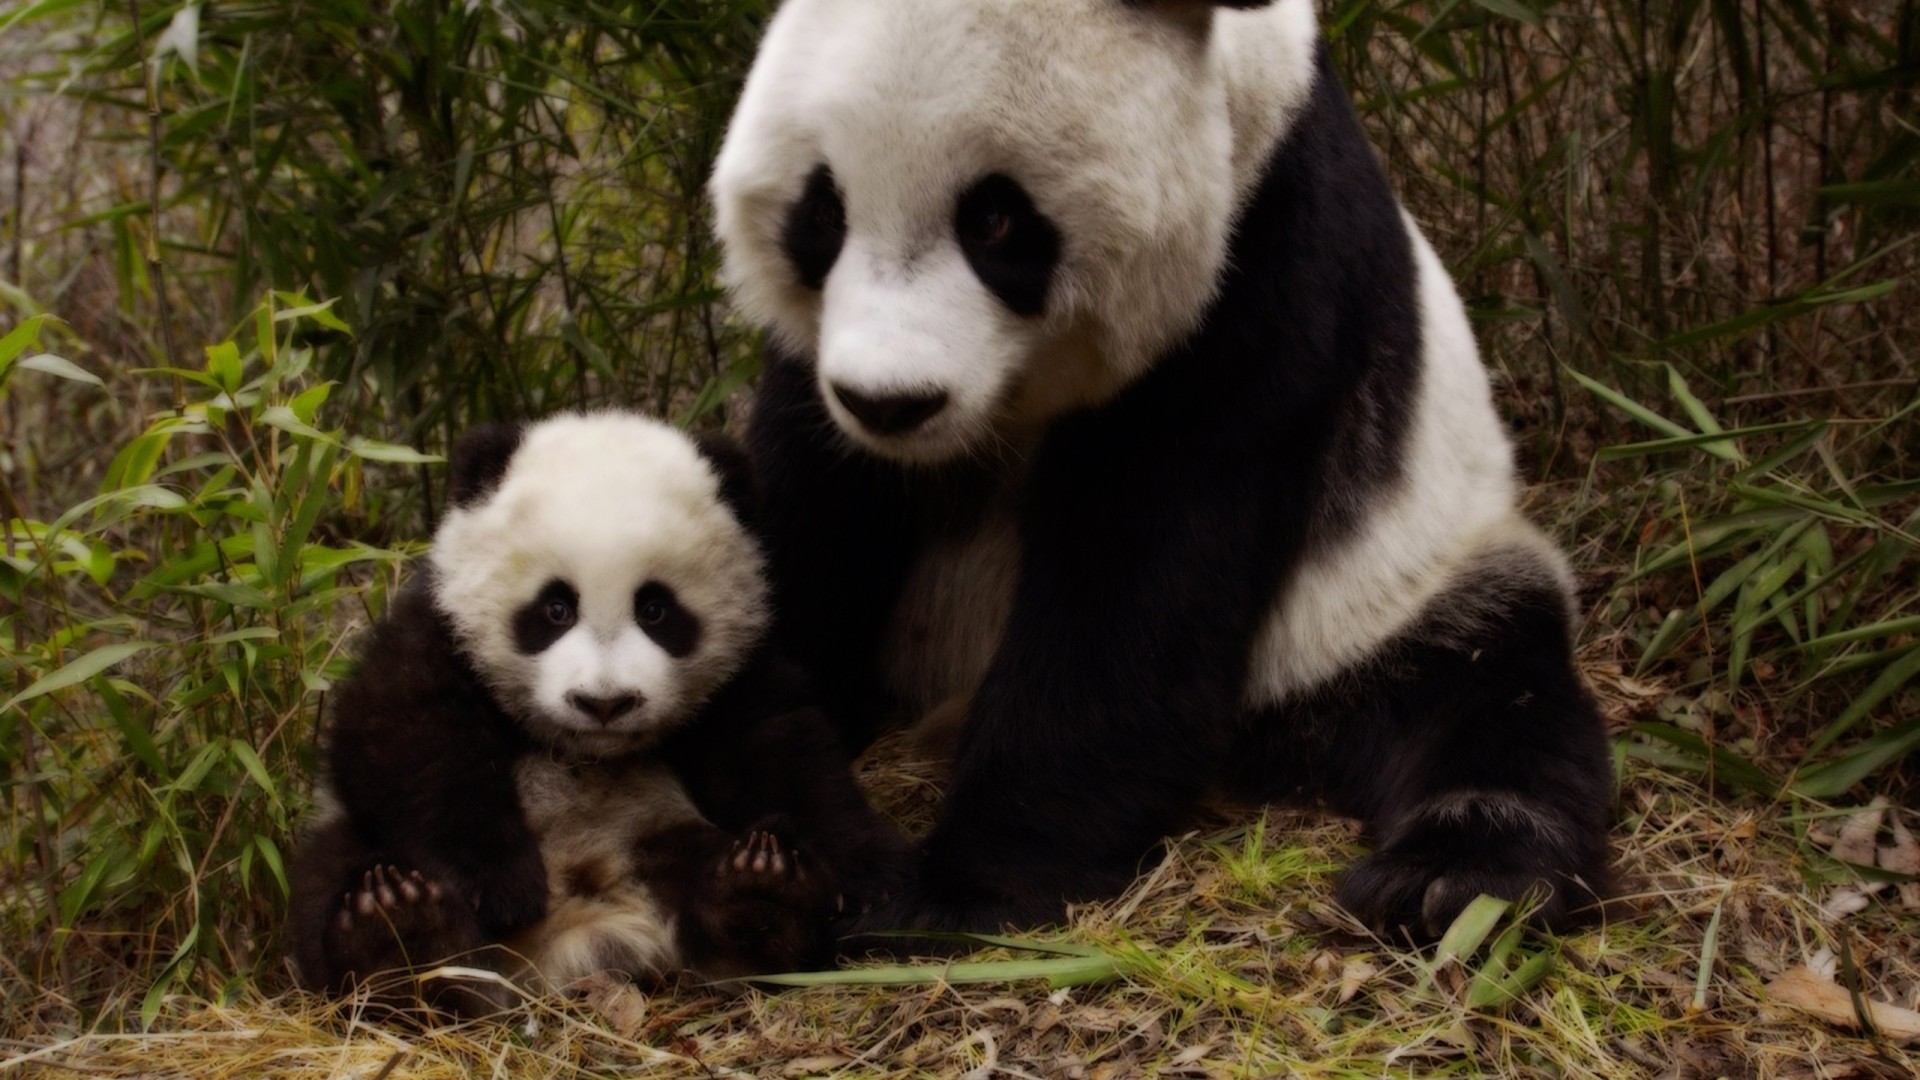 Descarga gratuita de fondo de pantalla para móvil de Animales, Oso, Lindo, Cachorro, Bambú, Panda, Bebe Animal.